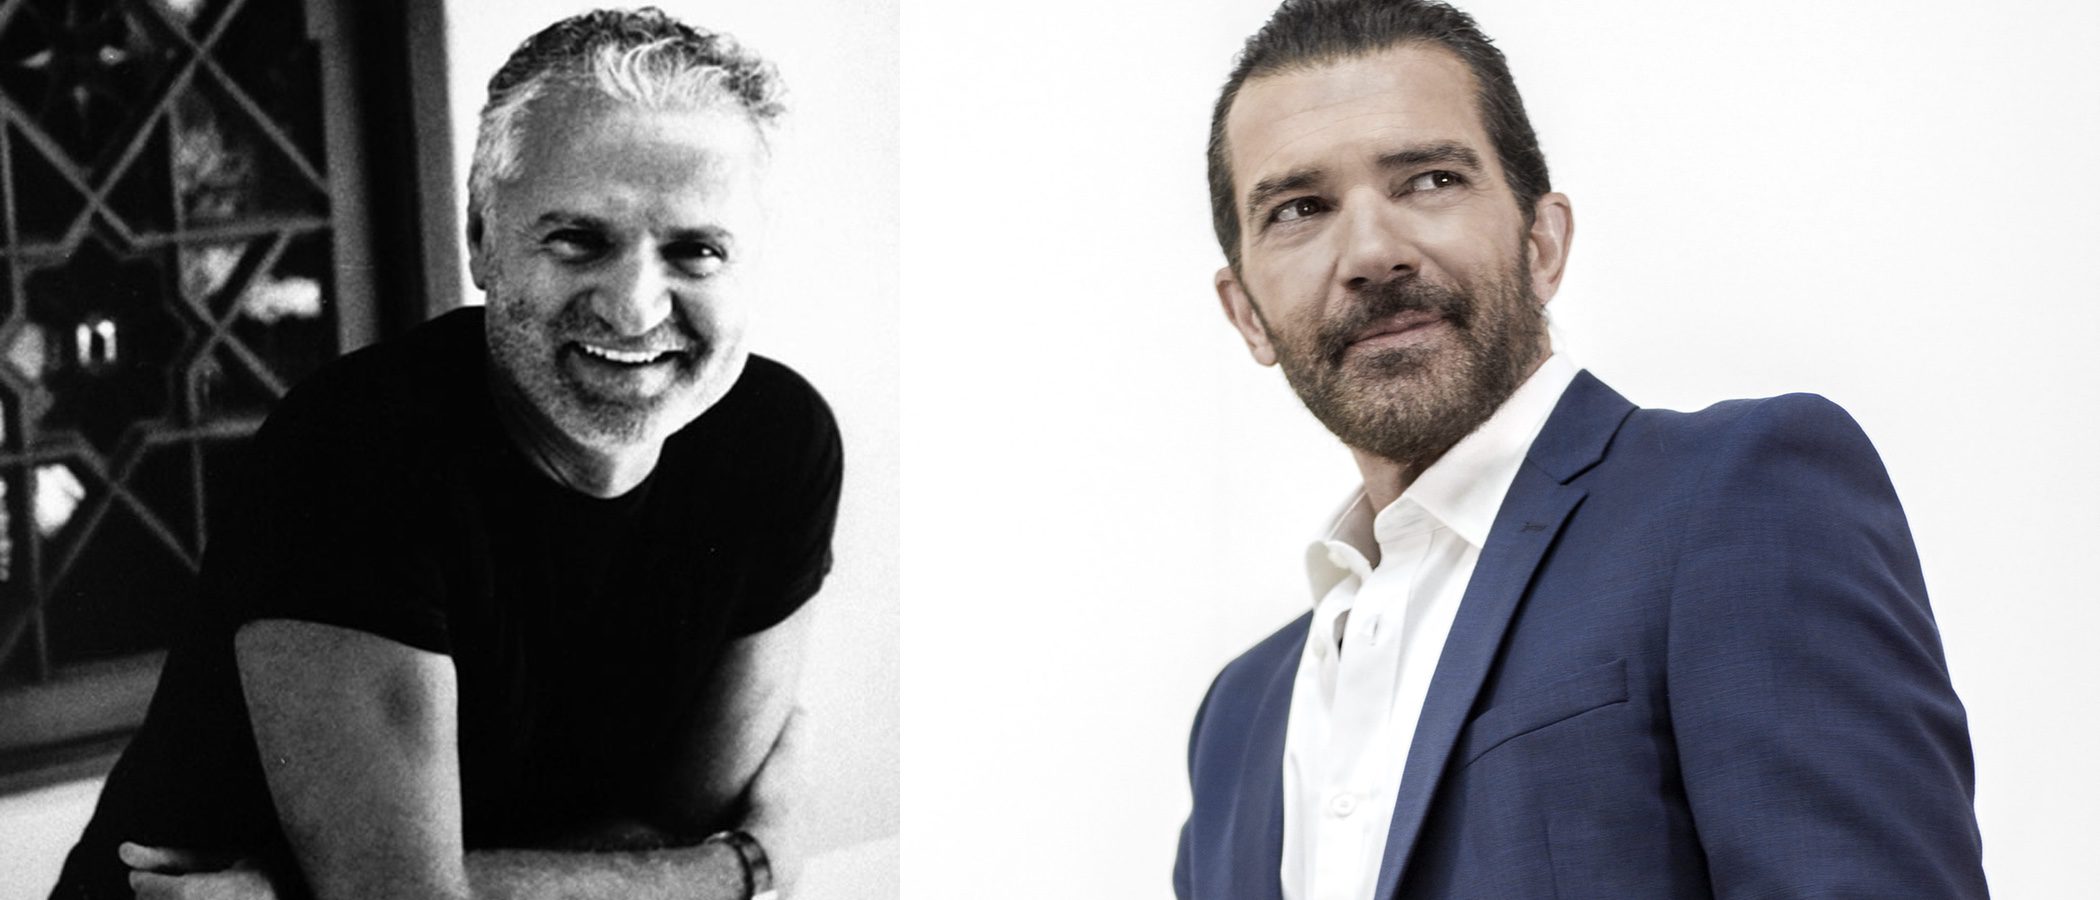 Antonio Banderas se transforma en Gianni Versace para la próxima película biográfica del diseñador